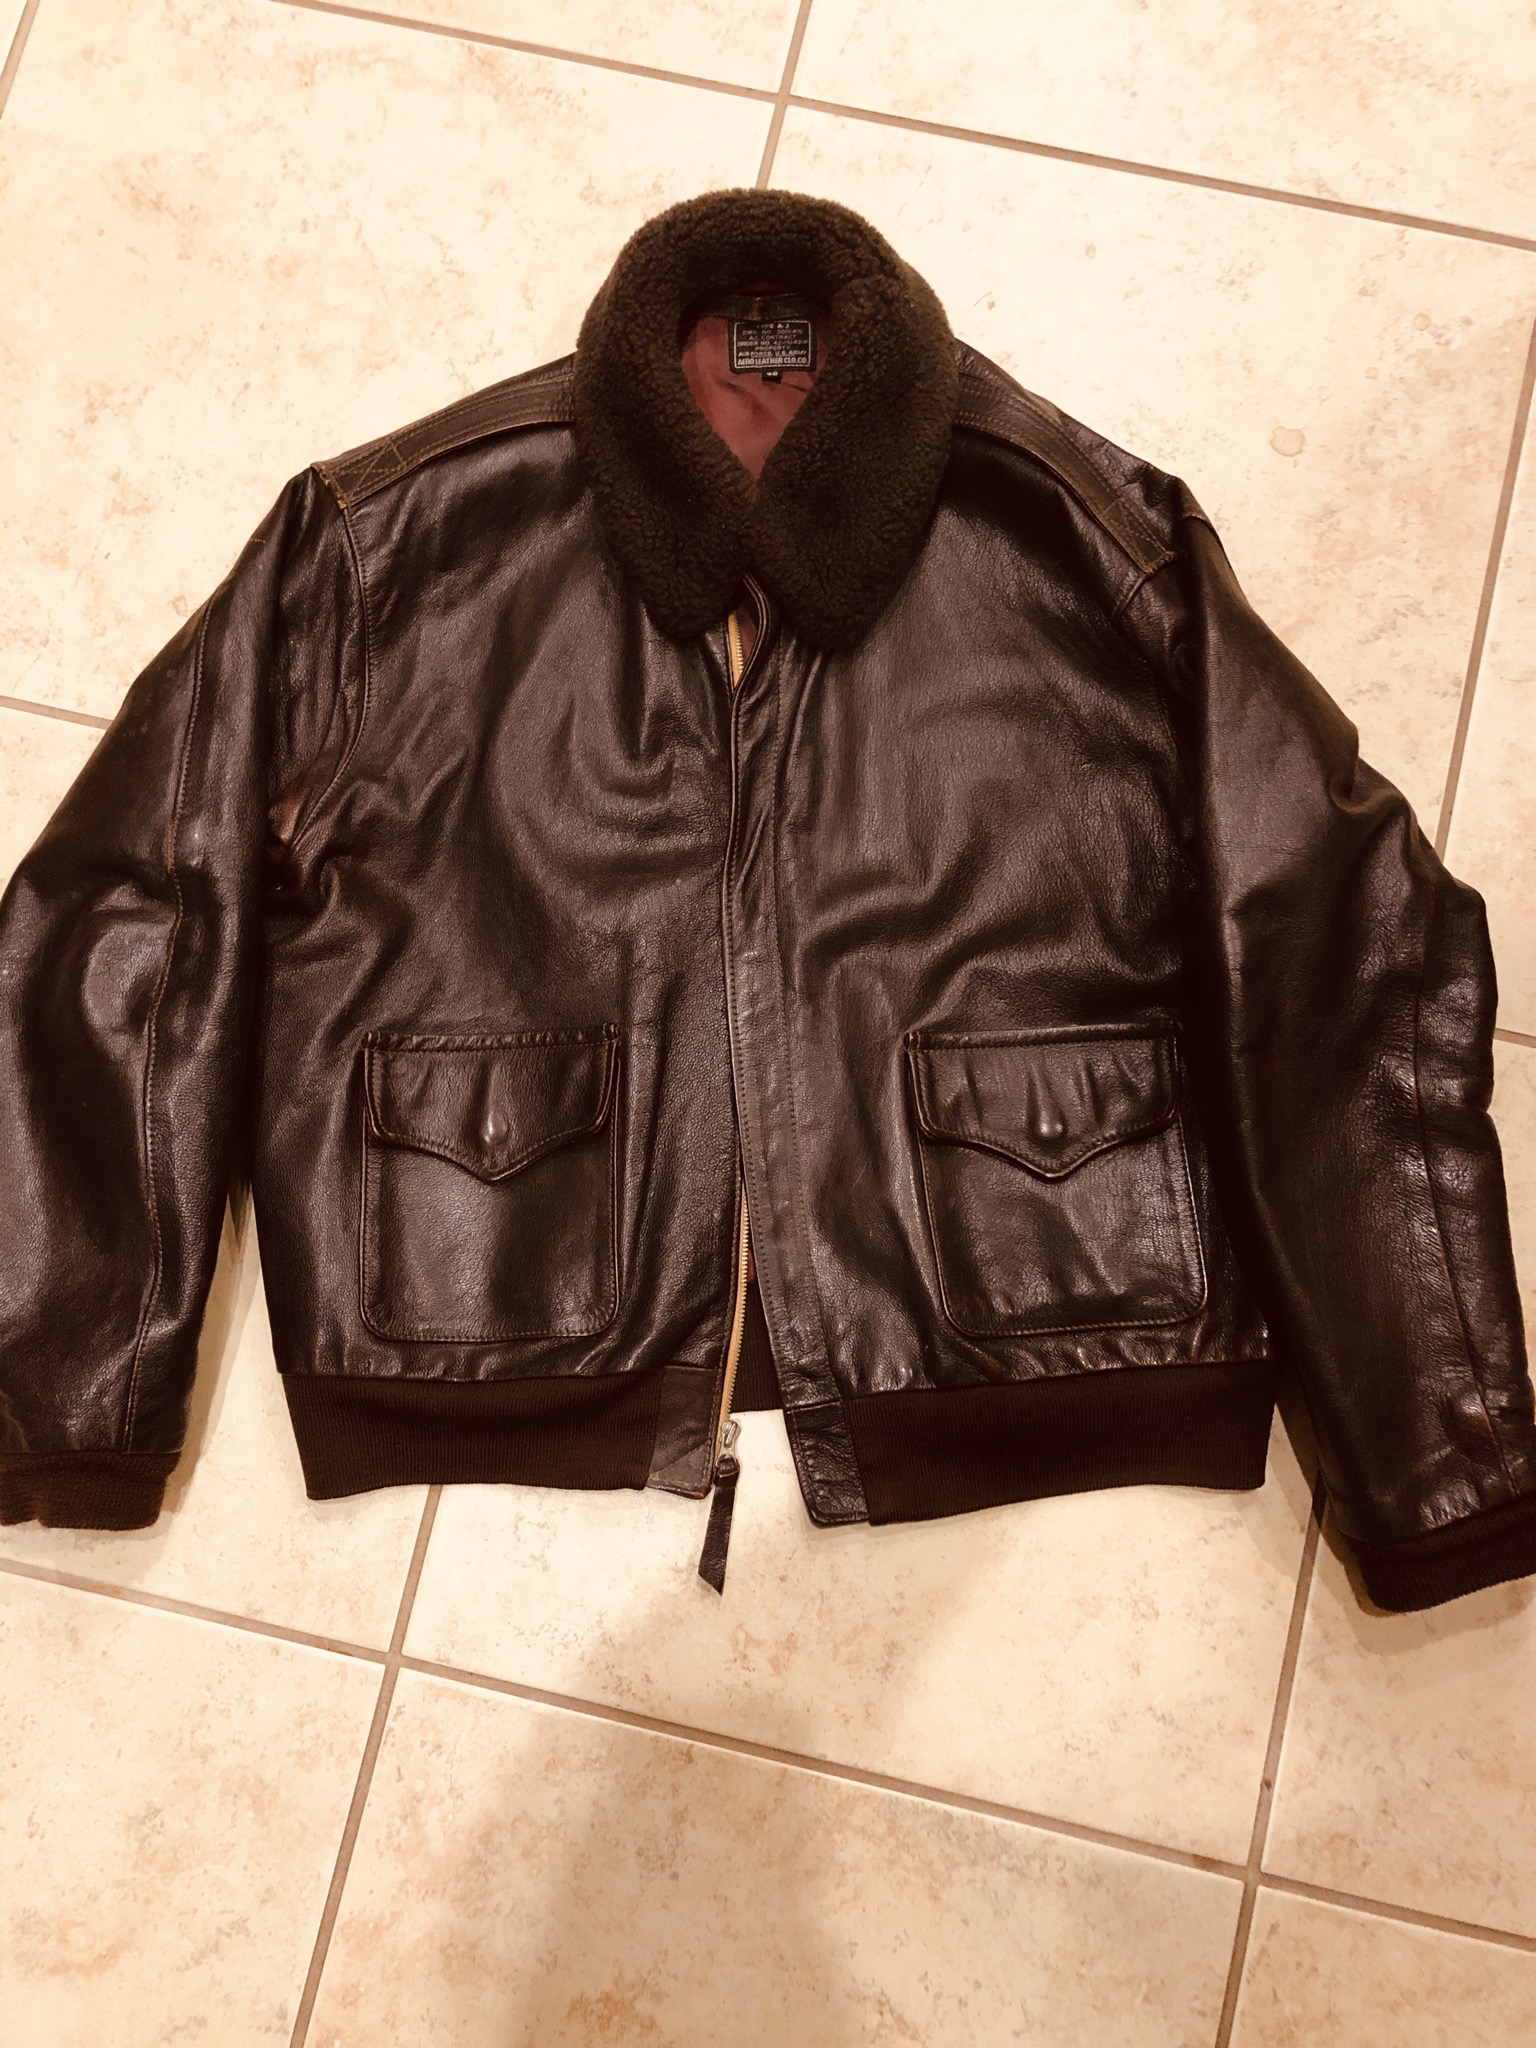 Tokyo joe Humphrey Bogart jacket | Vintage Leather Jackets Forum